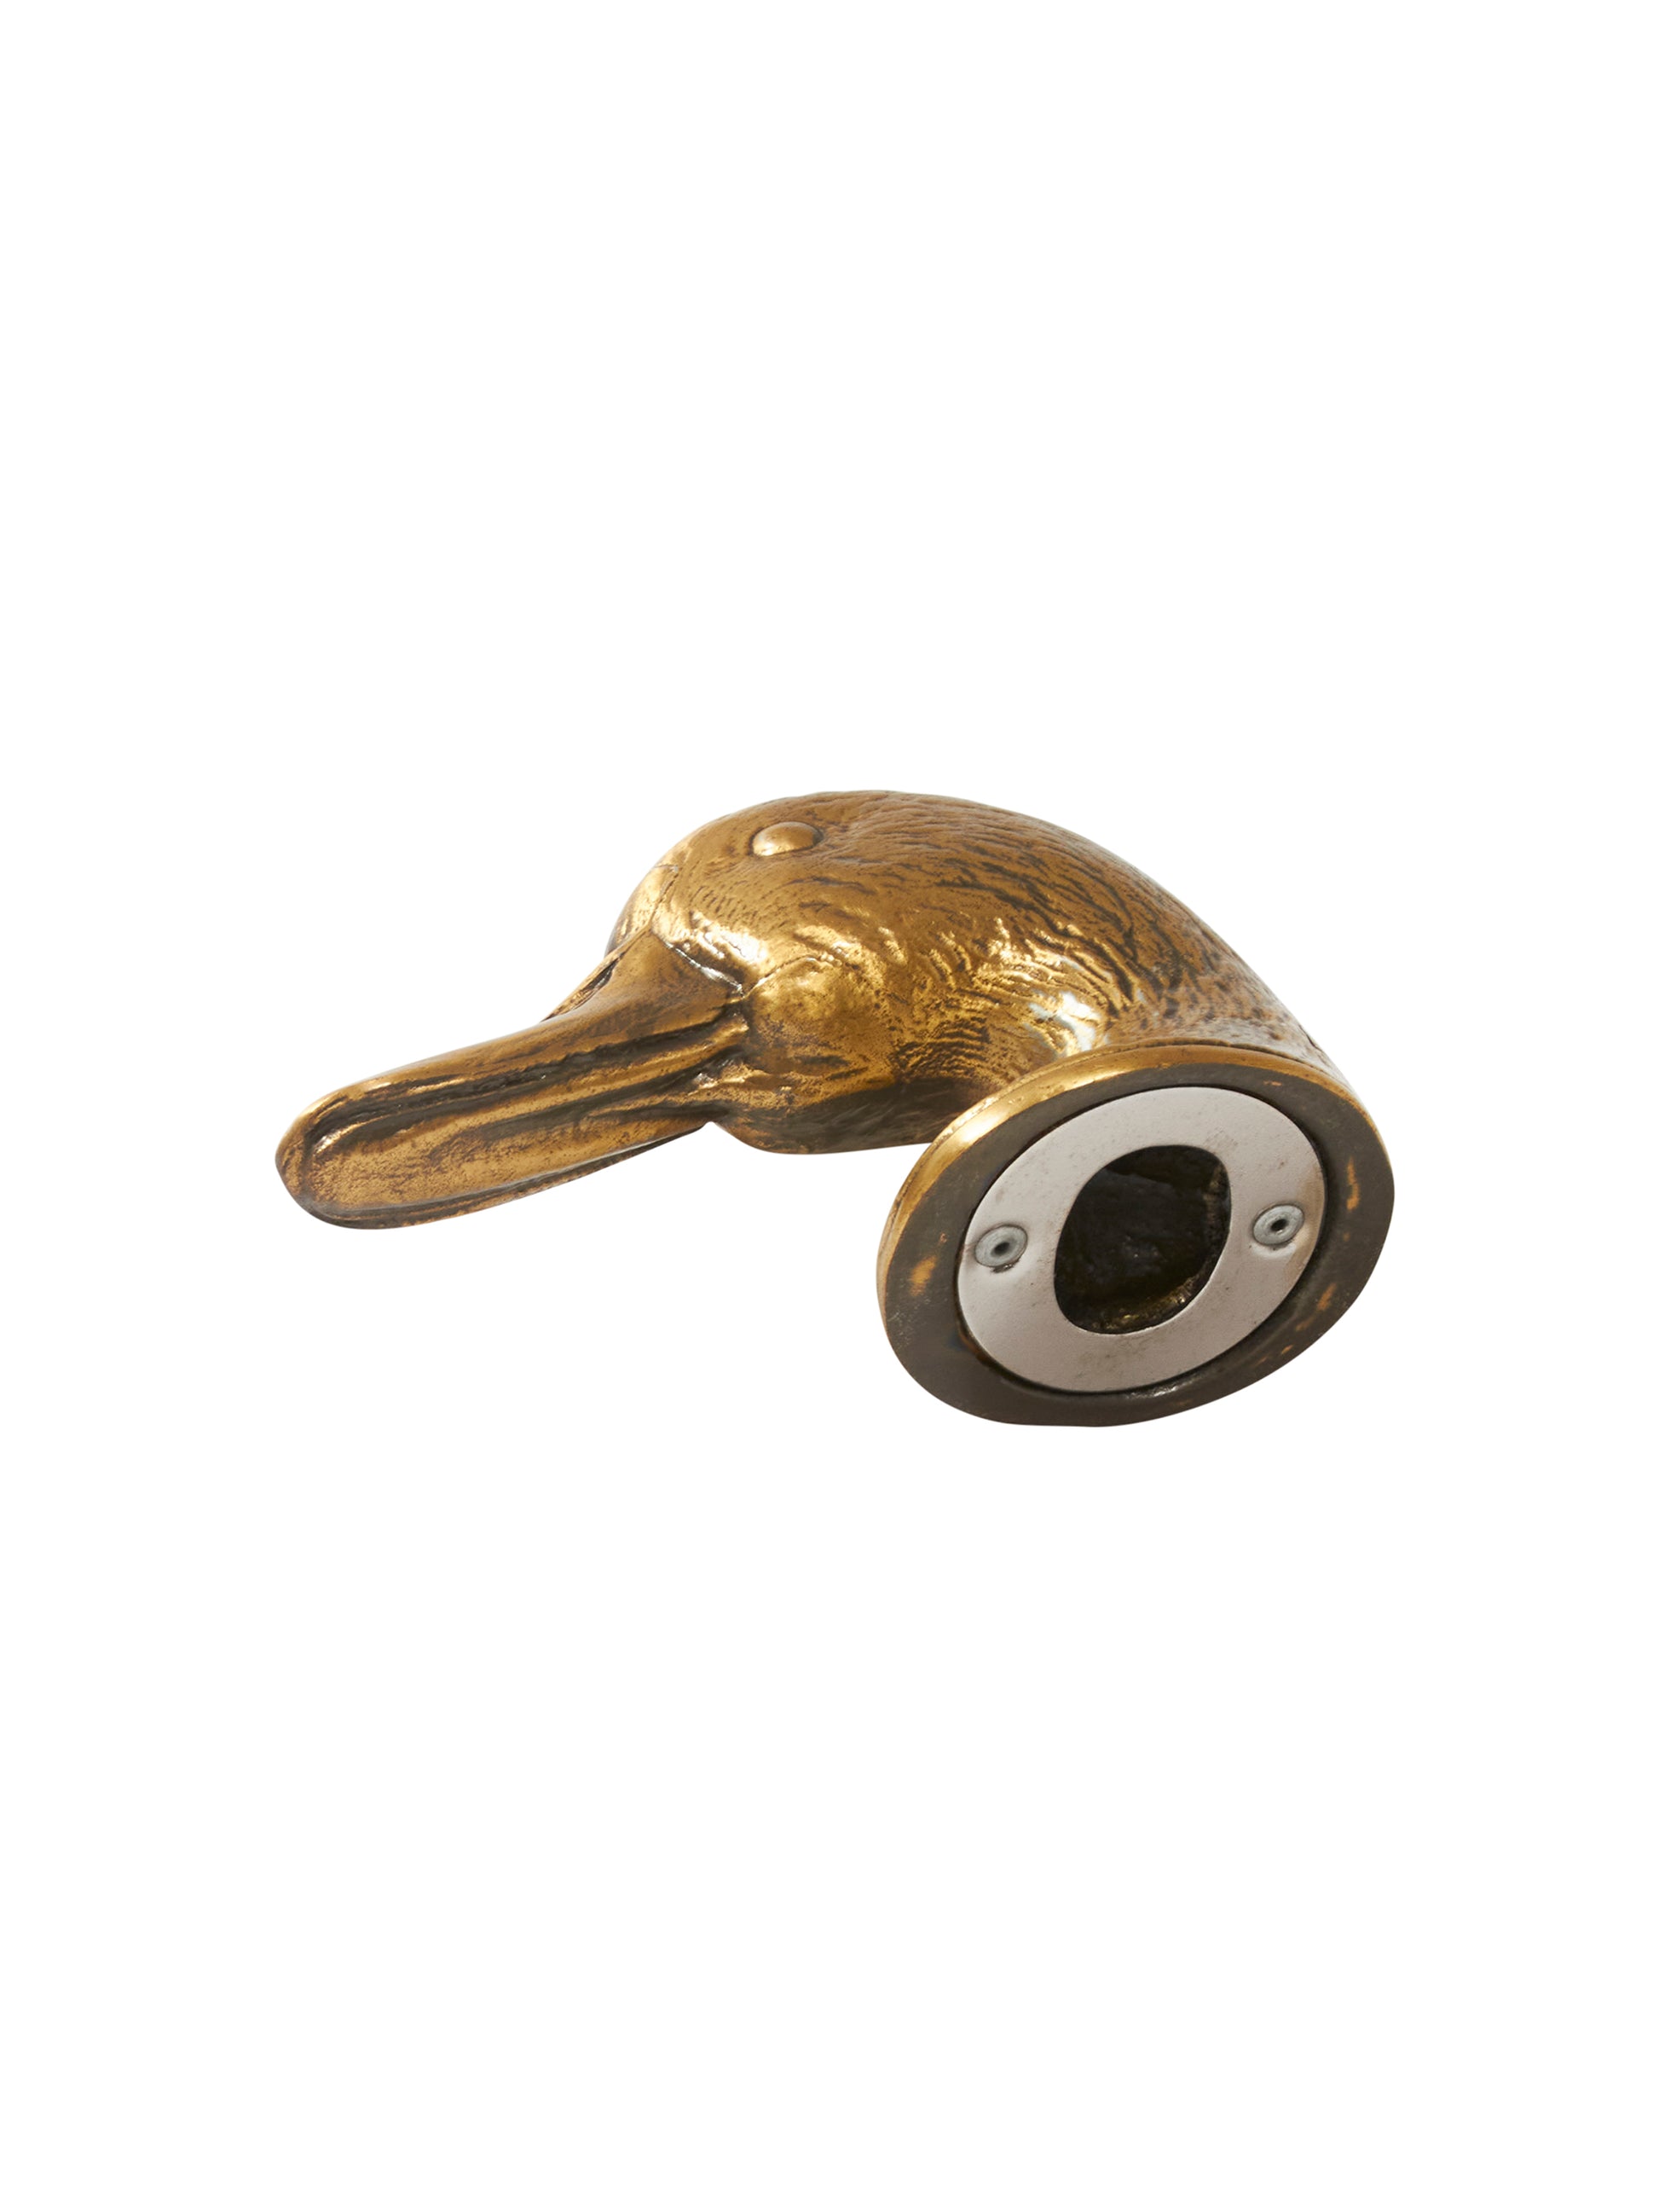 Shop the Vintage Textured Brass Duck Head Bottle Opener at Weston